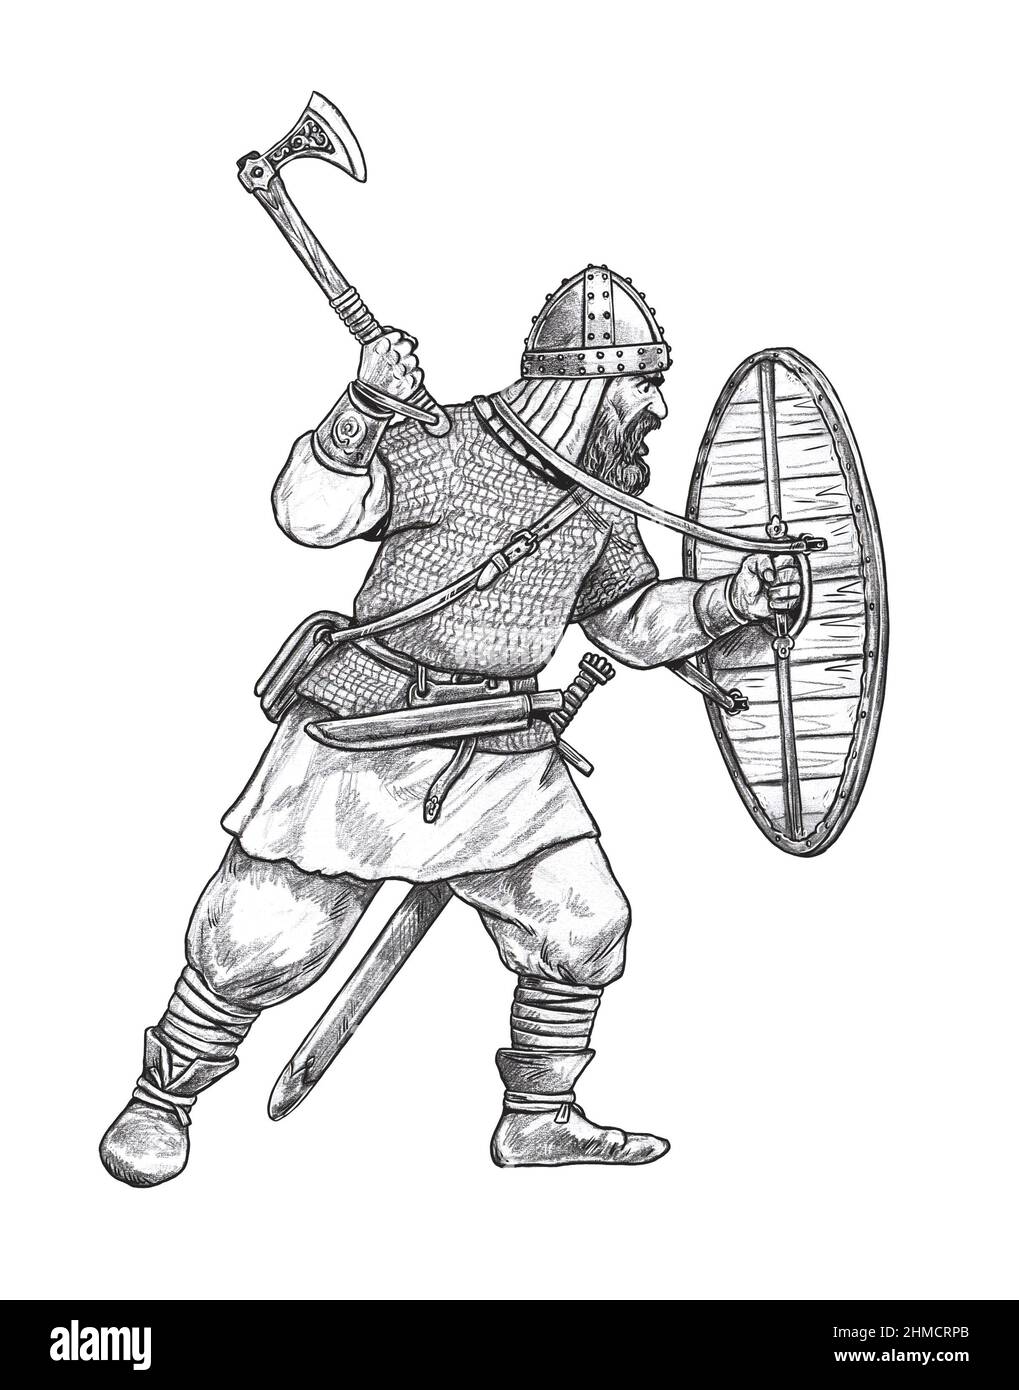 Viking avec hache. Guerrier normand au combat. Illustration chevalier médiéval. Banque D'Images